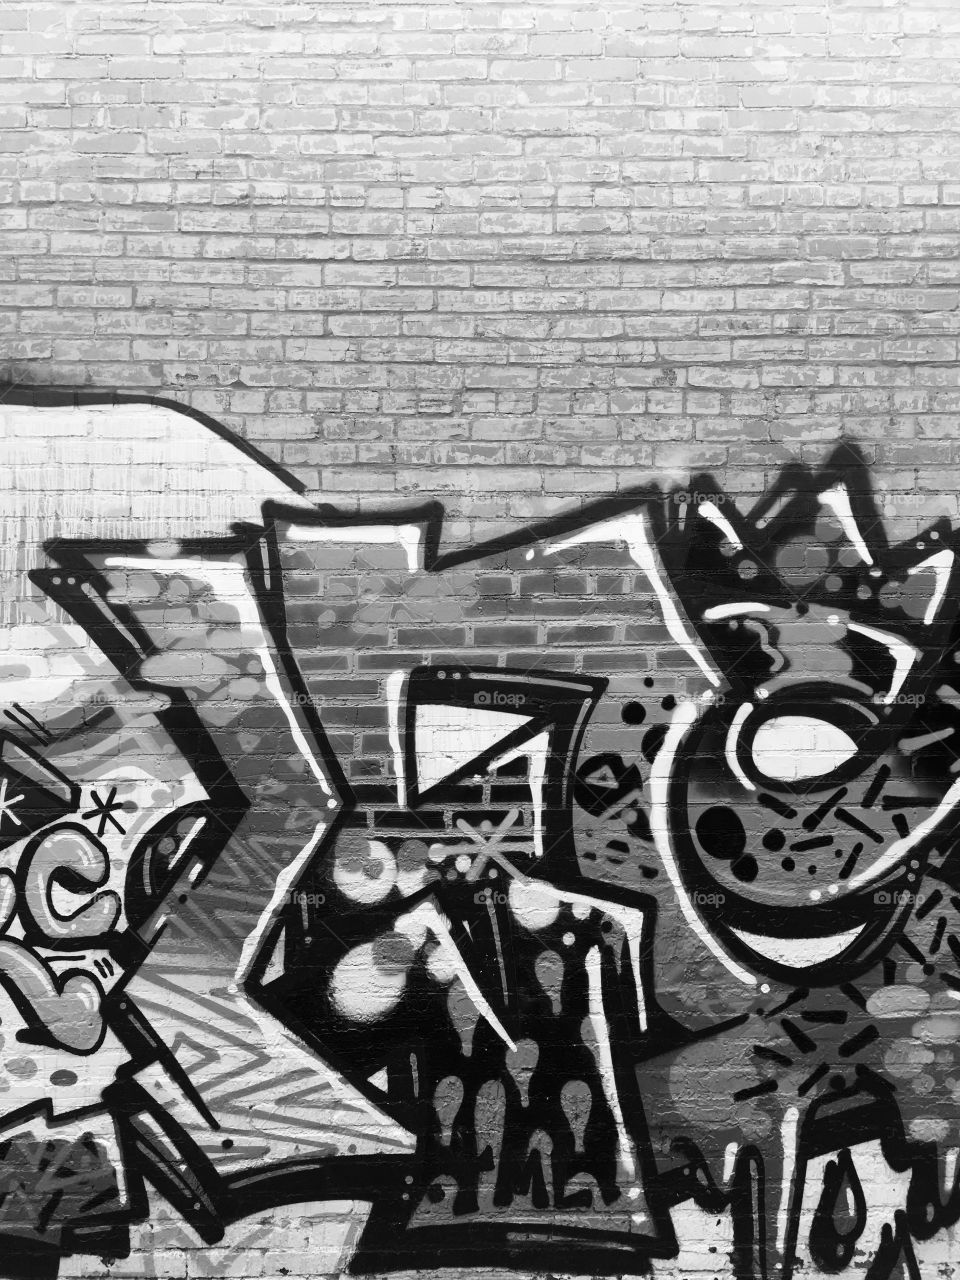 Graffiti. 